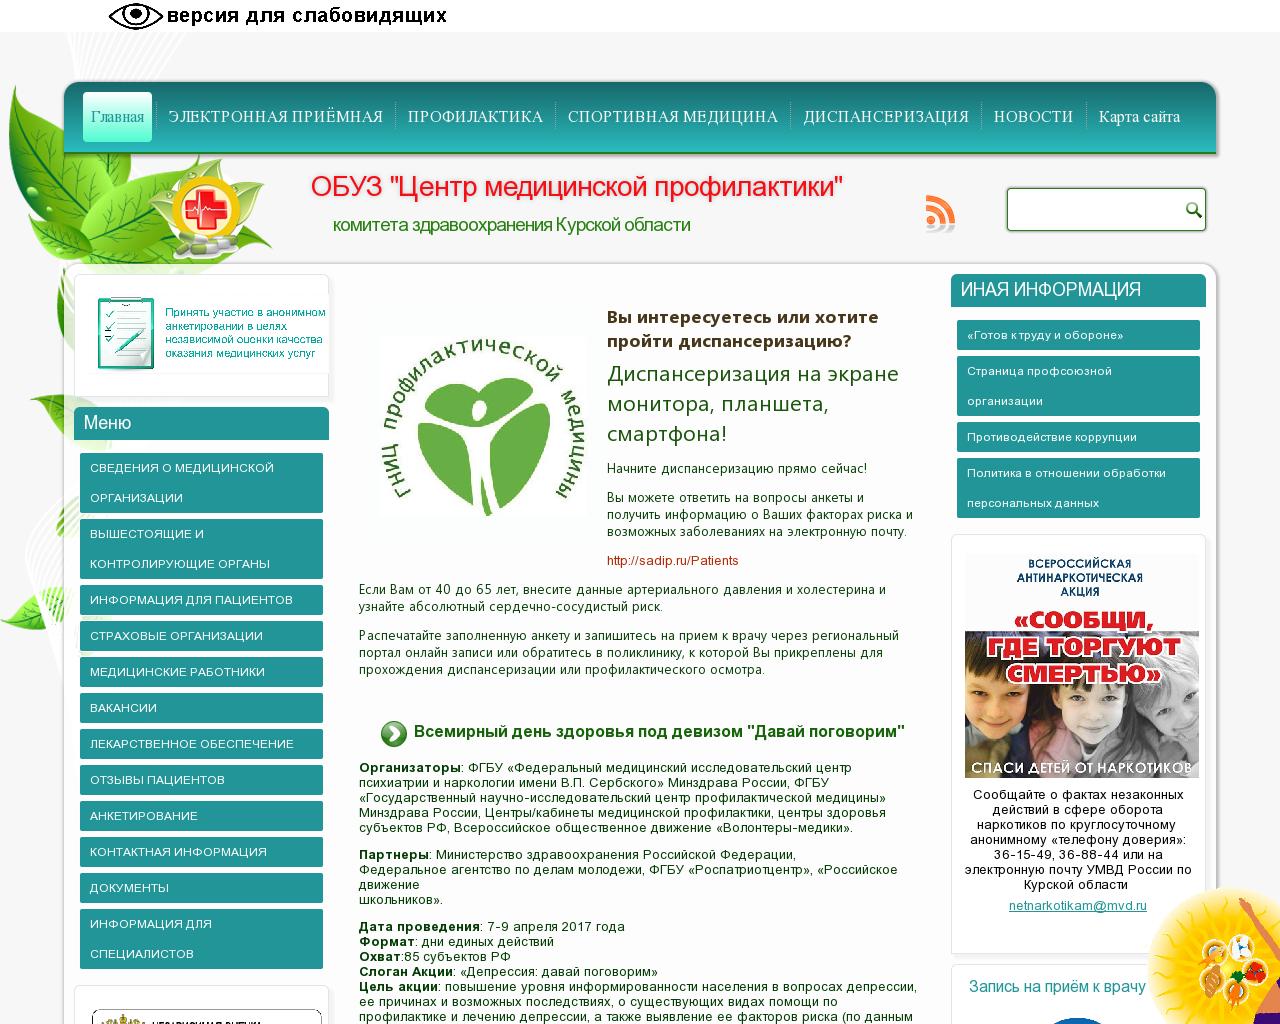 Изображение сайта cmpkursk.ru в разрешении 1280x1024